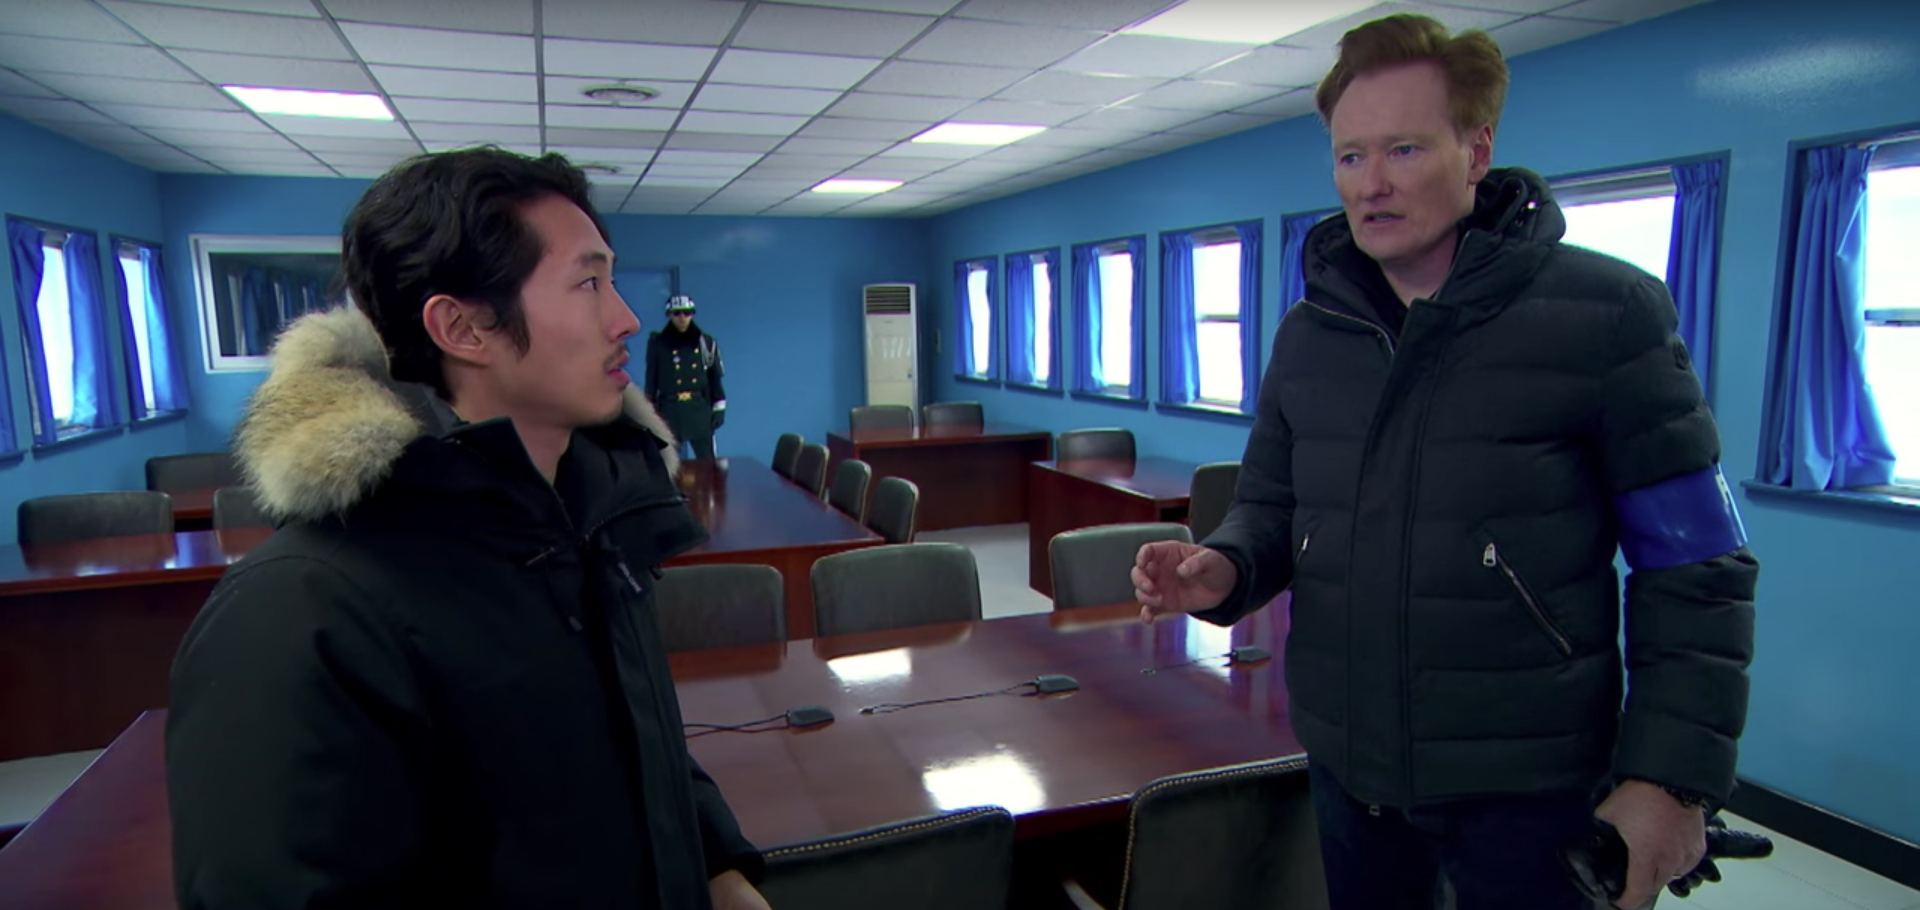 Conan O'Brien and Steven Yeun at the DMZ